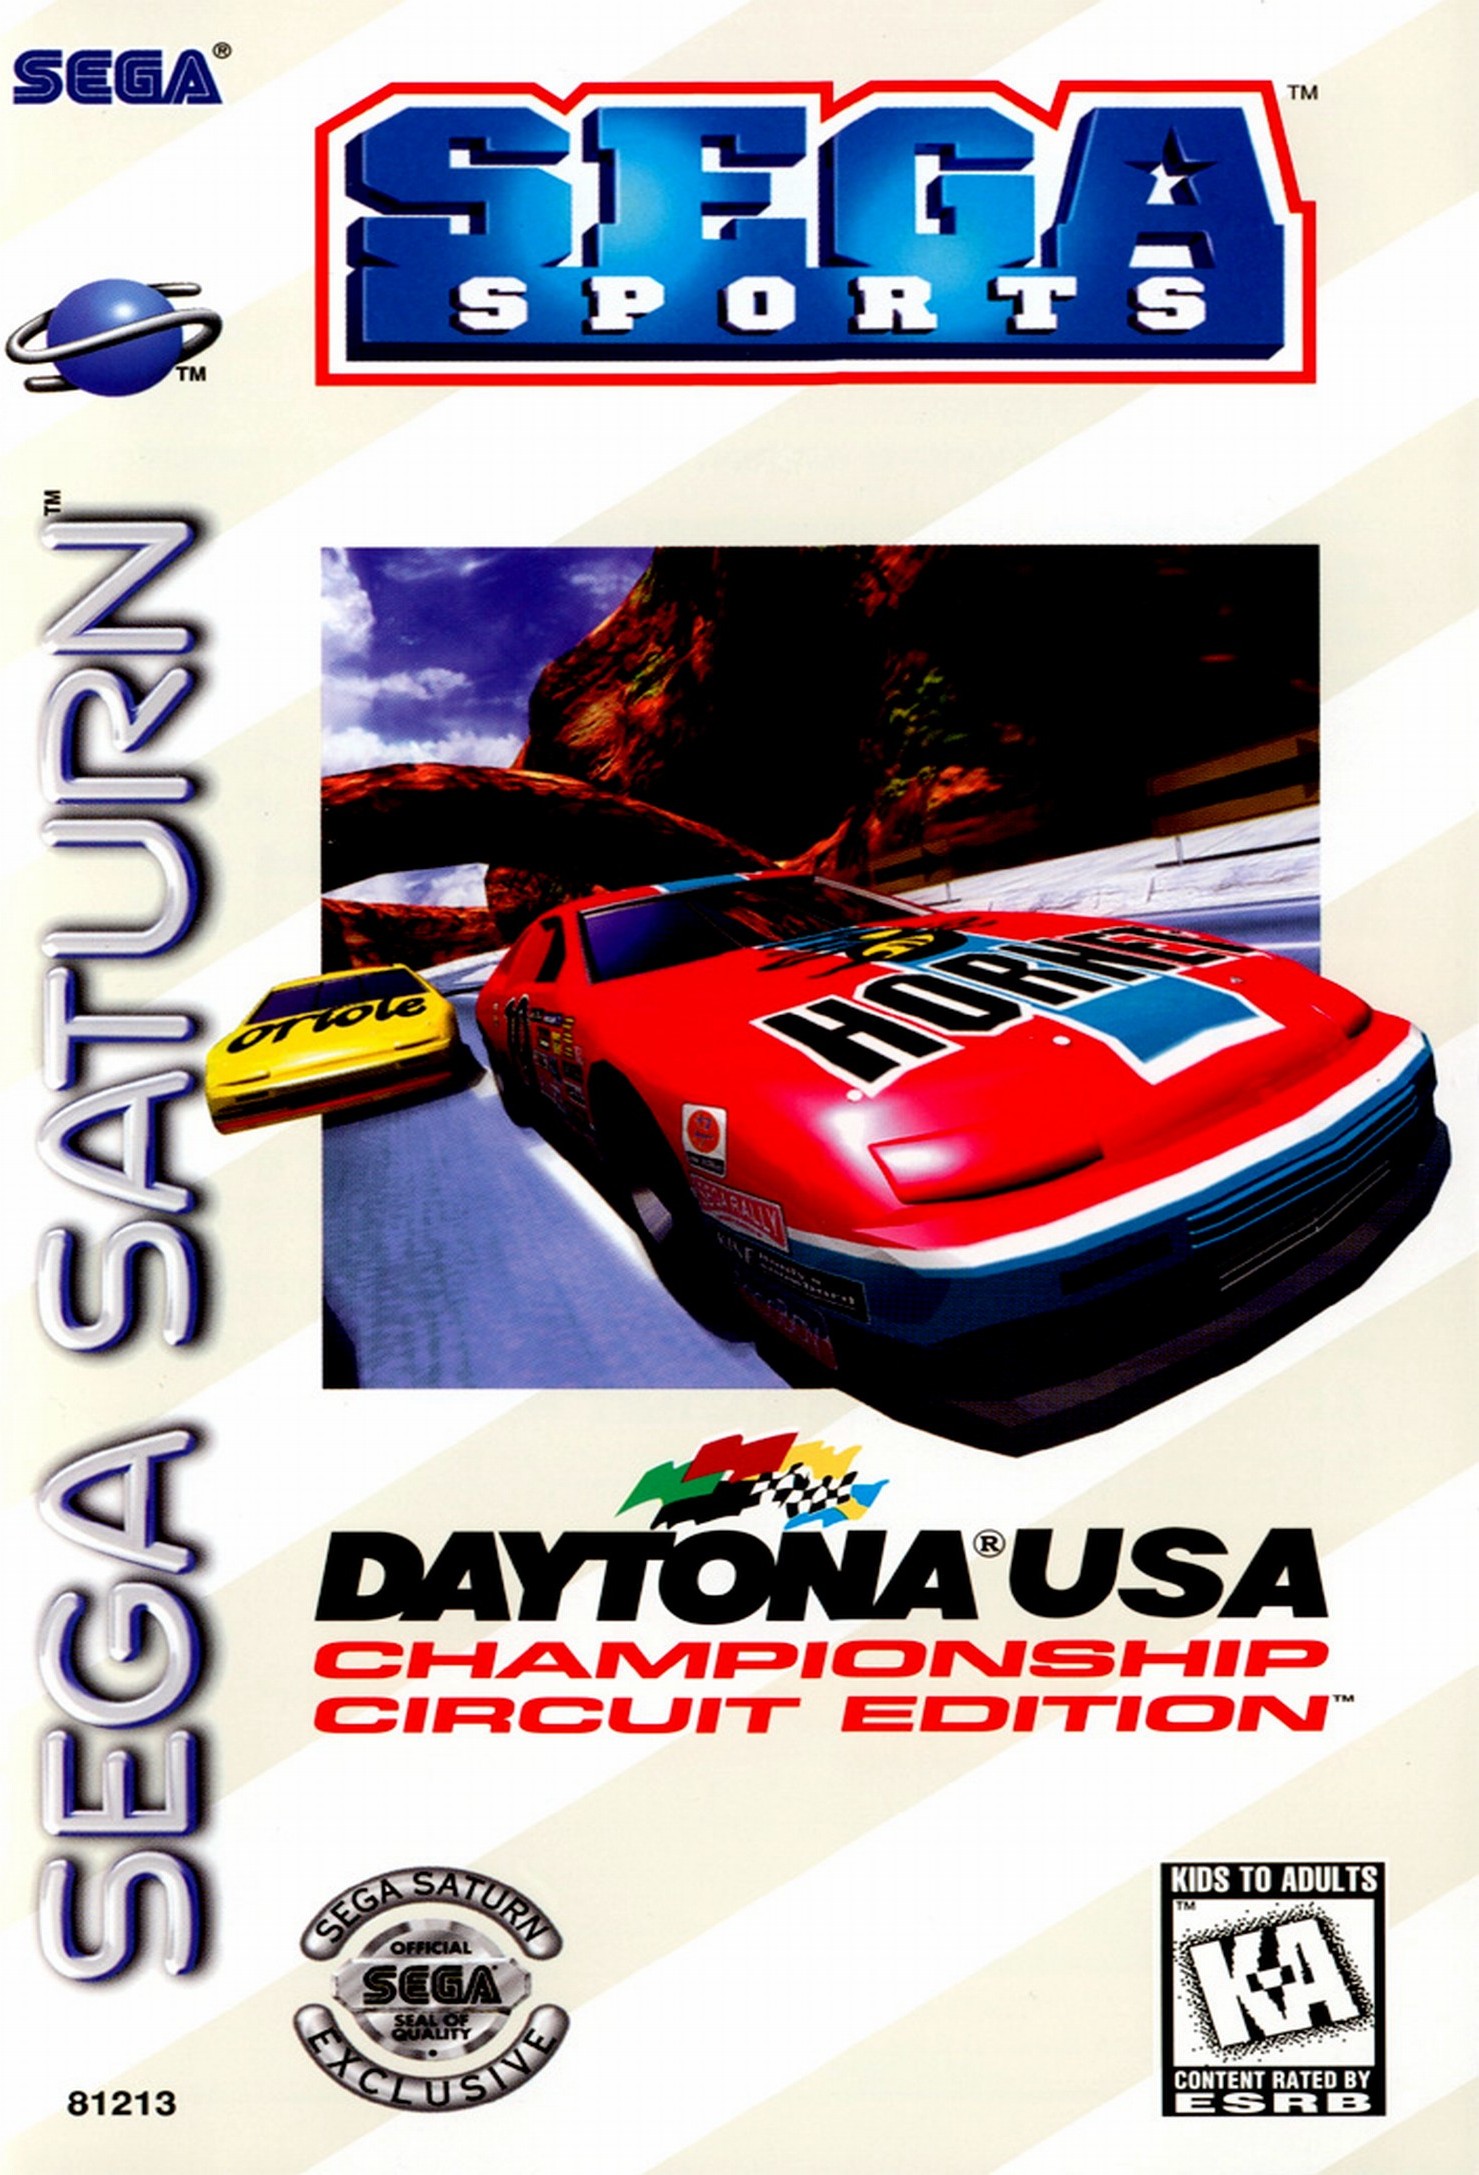 download daytona usa championship netlink edition